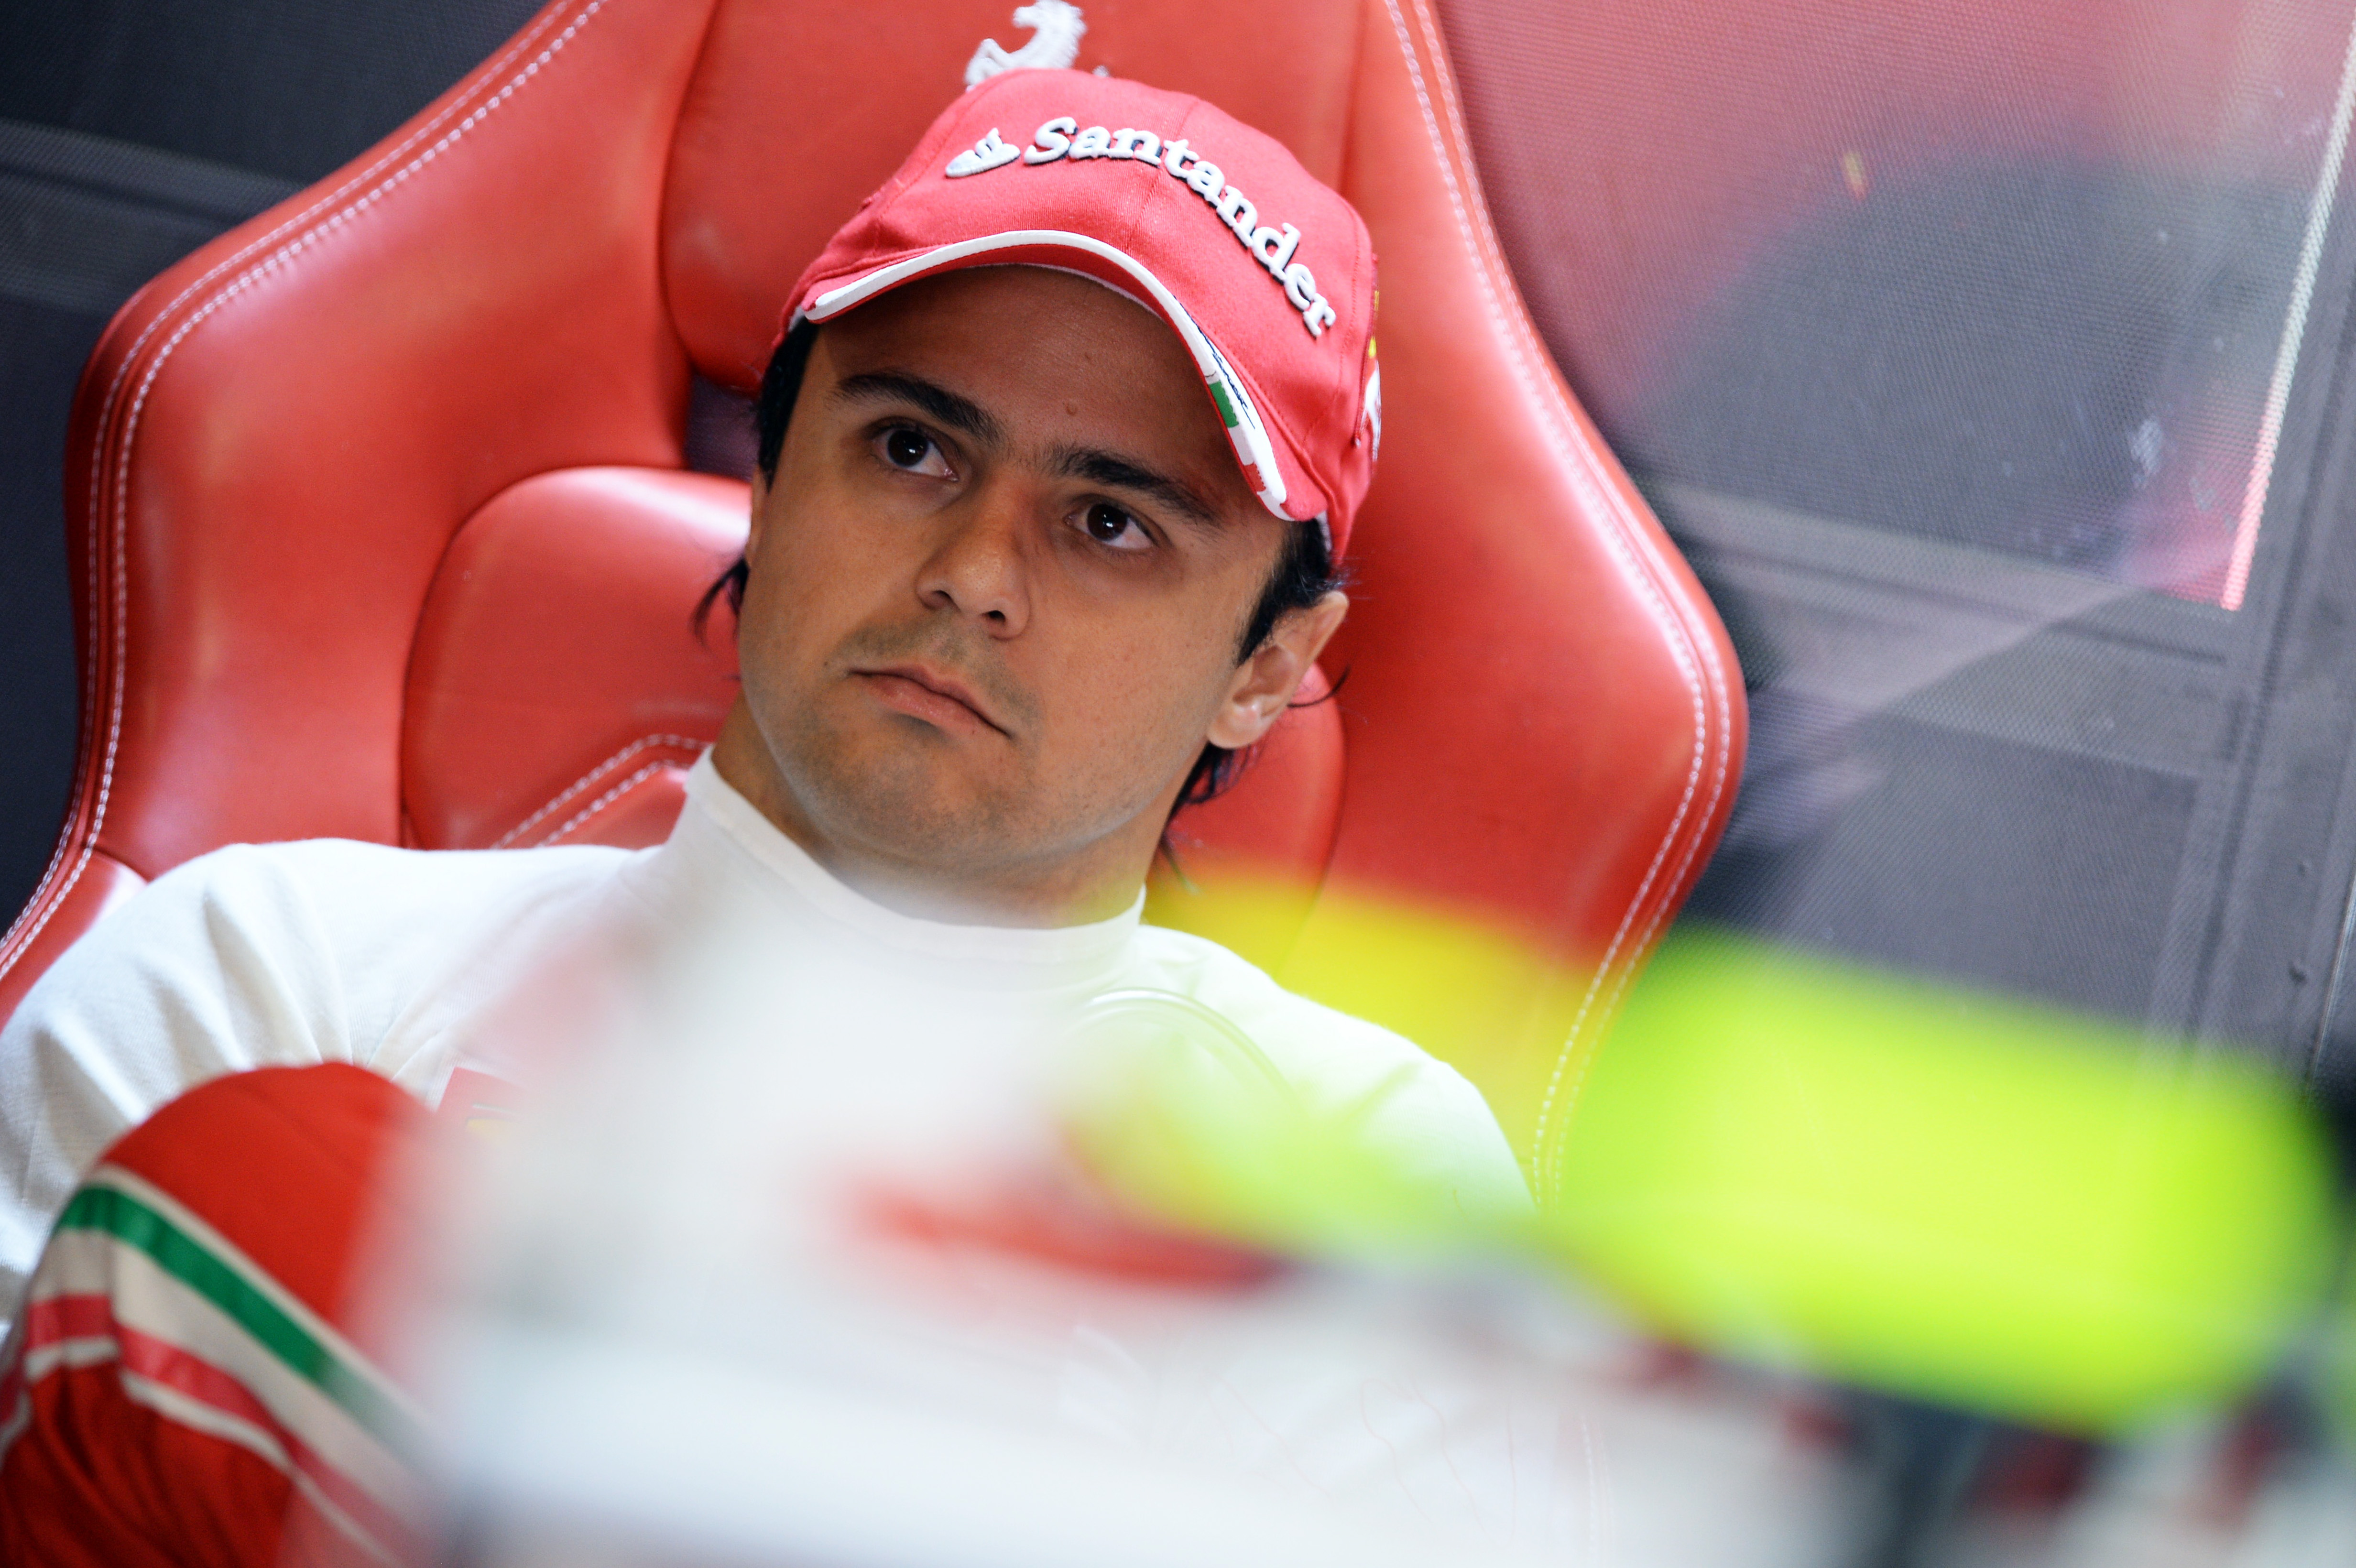 Massa wil races winnen in 2014